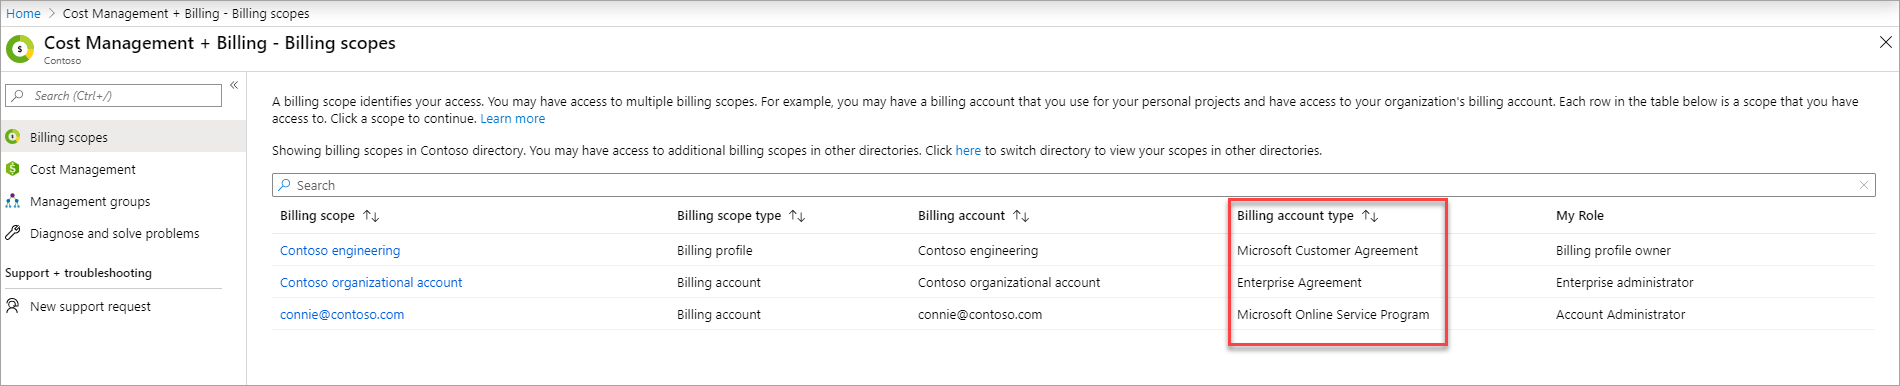 Снимок экрана: страница со списком учетных записей выставления счетов и Клиентским соглашением Майкрософт